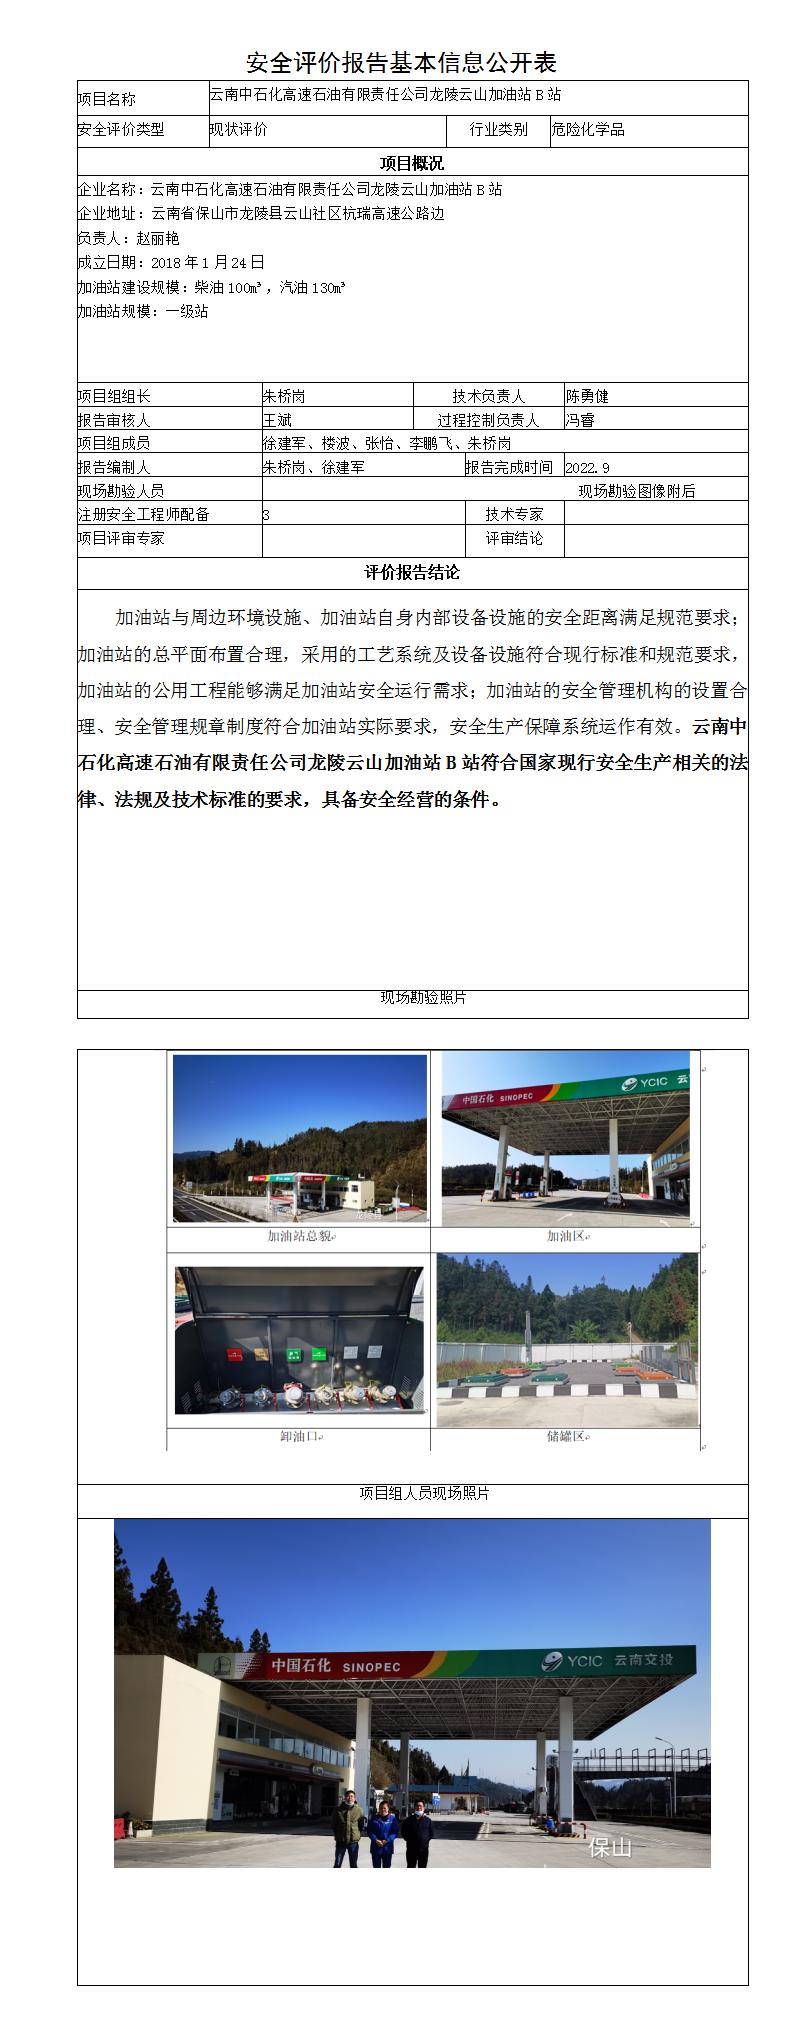 云山B站安全评价报告基本信息公开表